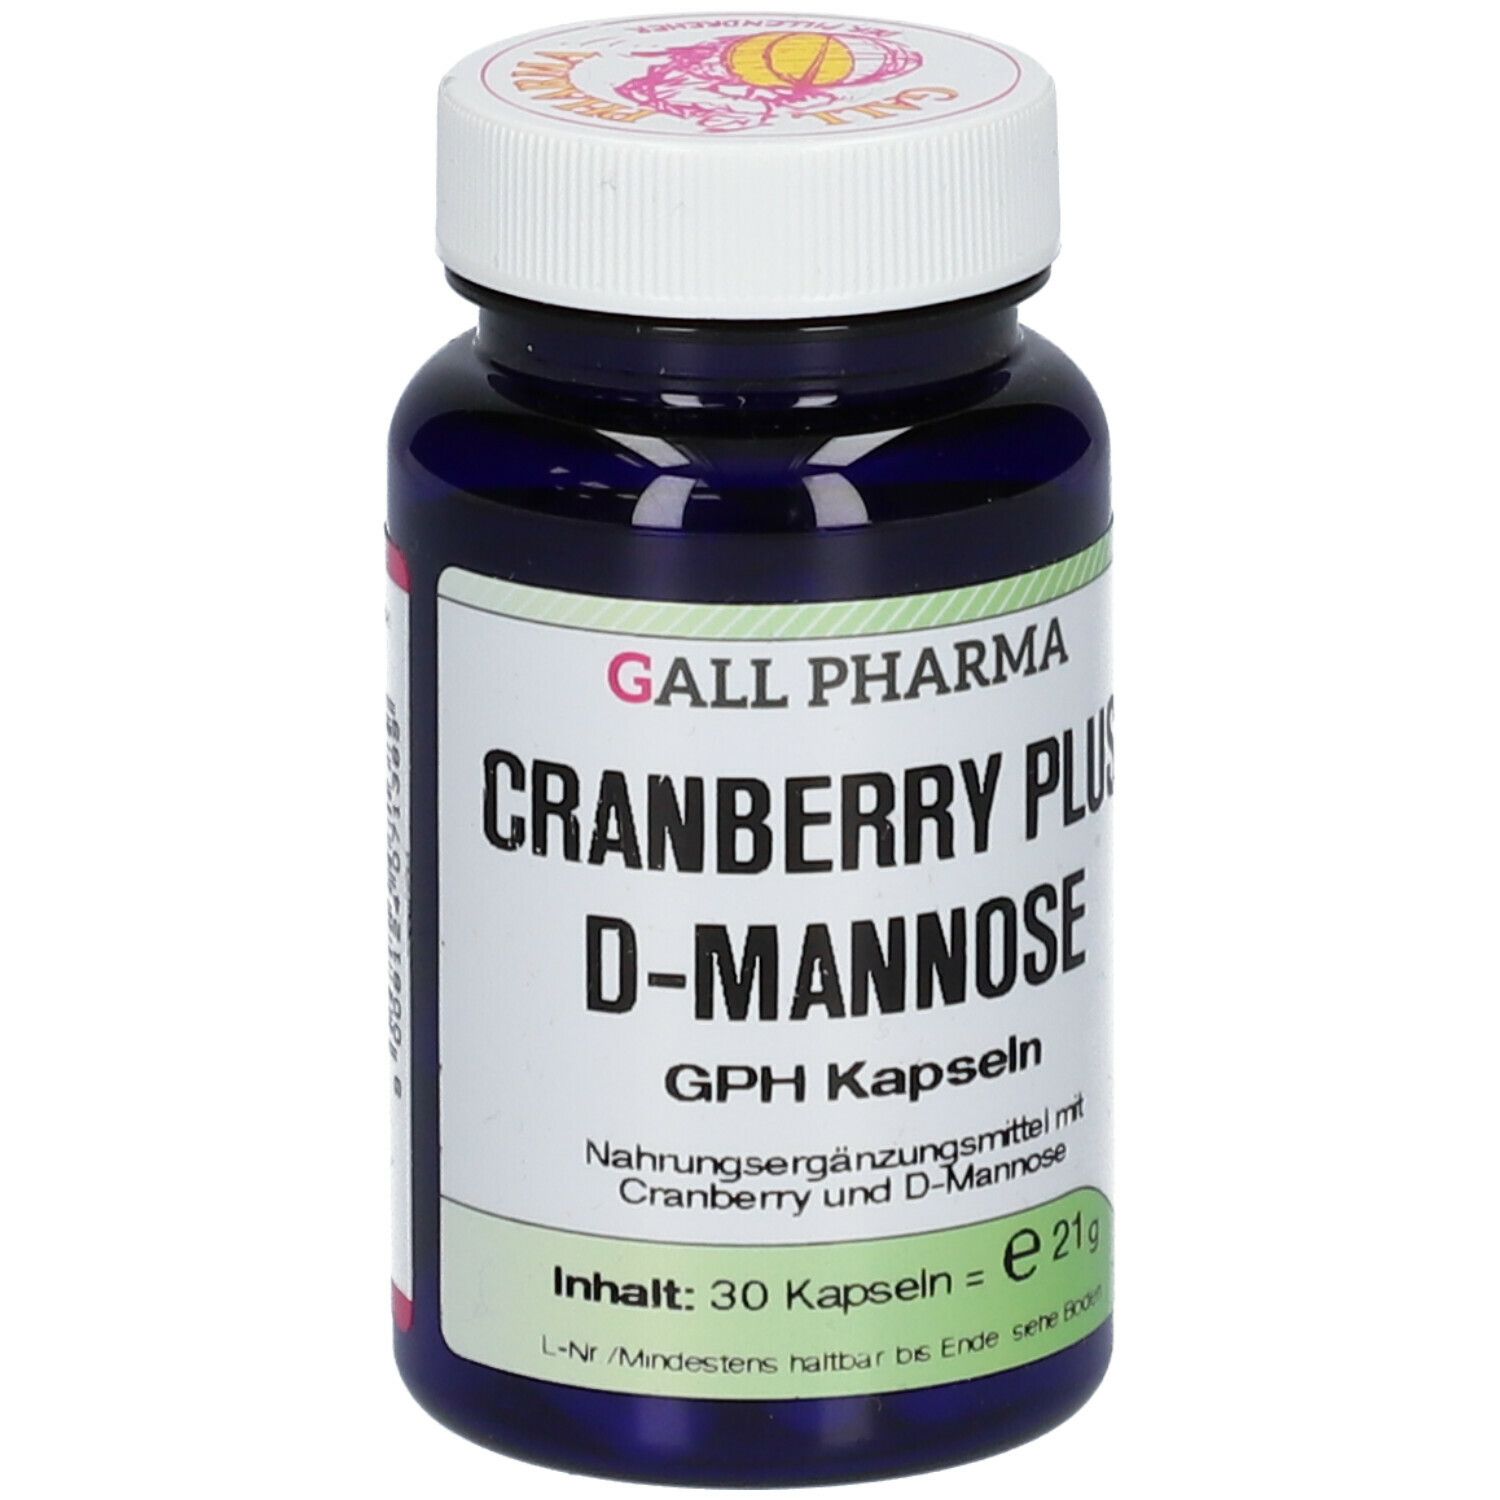 CRANBERRY PLUS D-MANNOSE